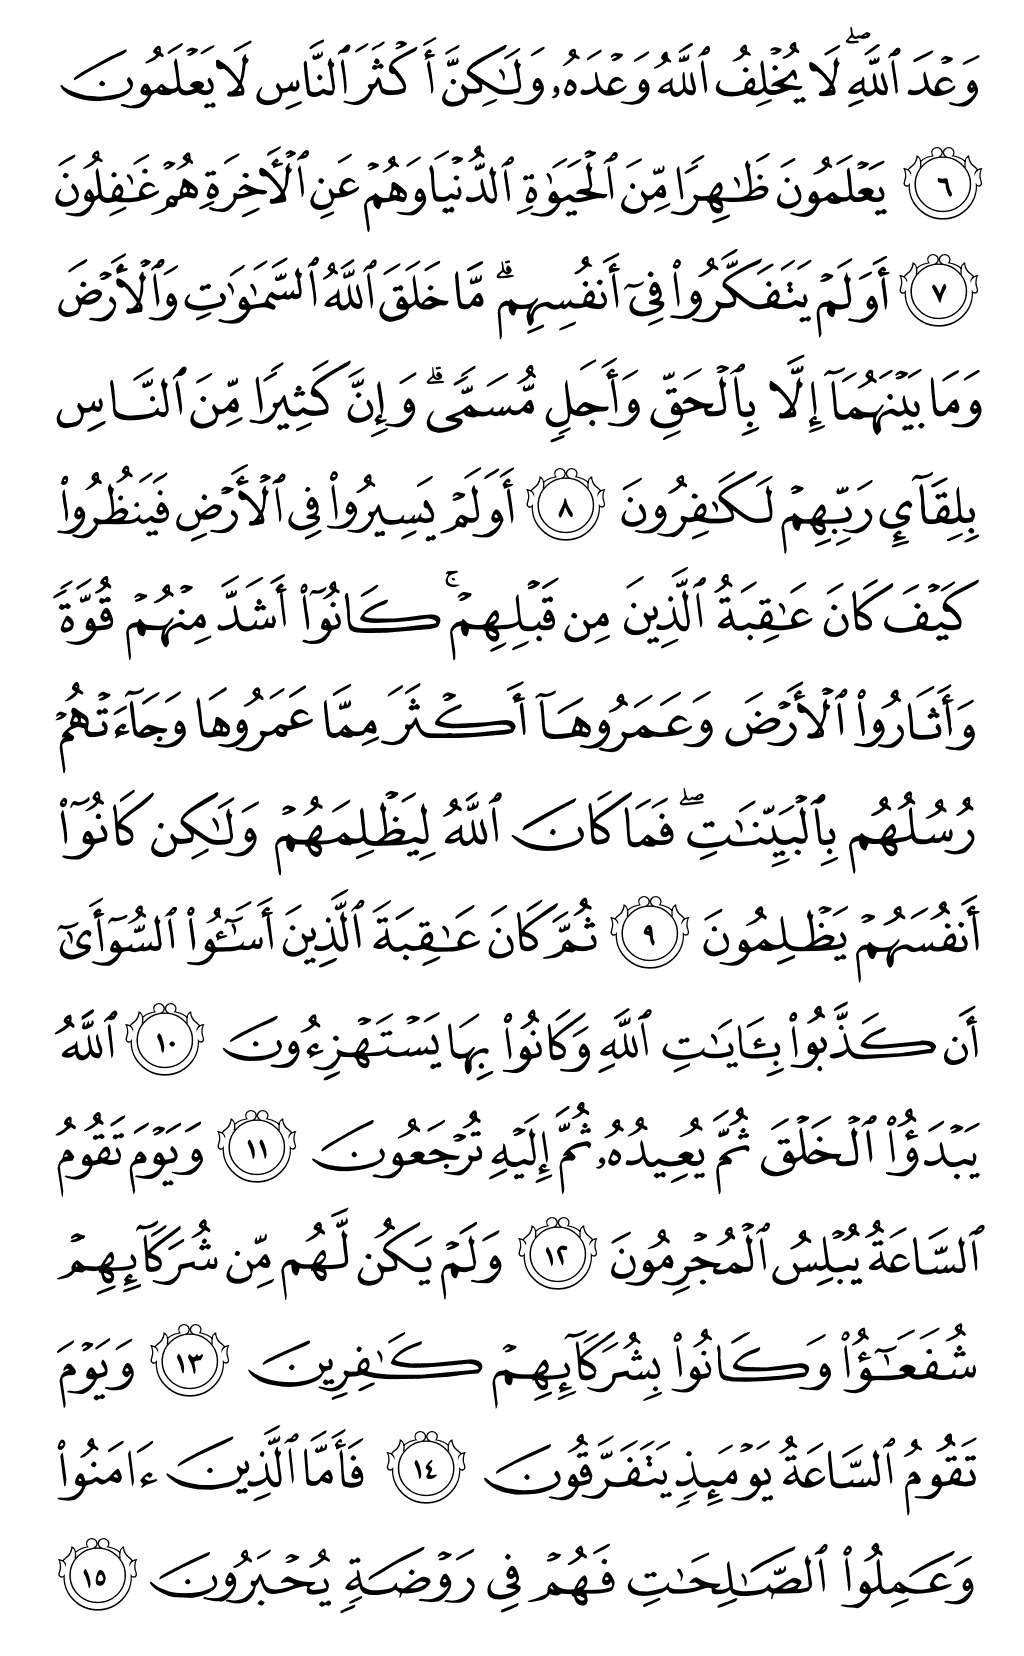 الصفحة رقم 405 من القرآن الكريم